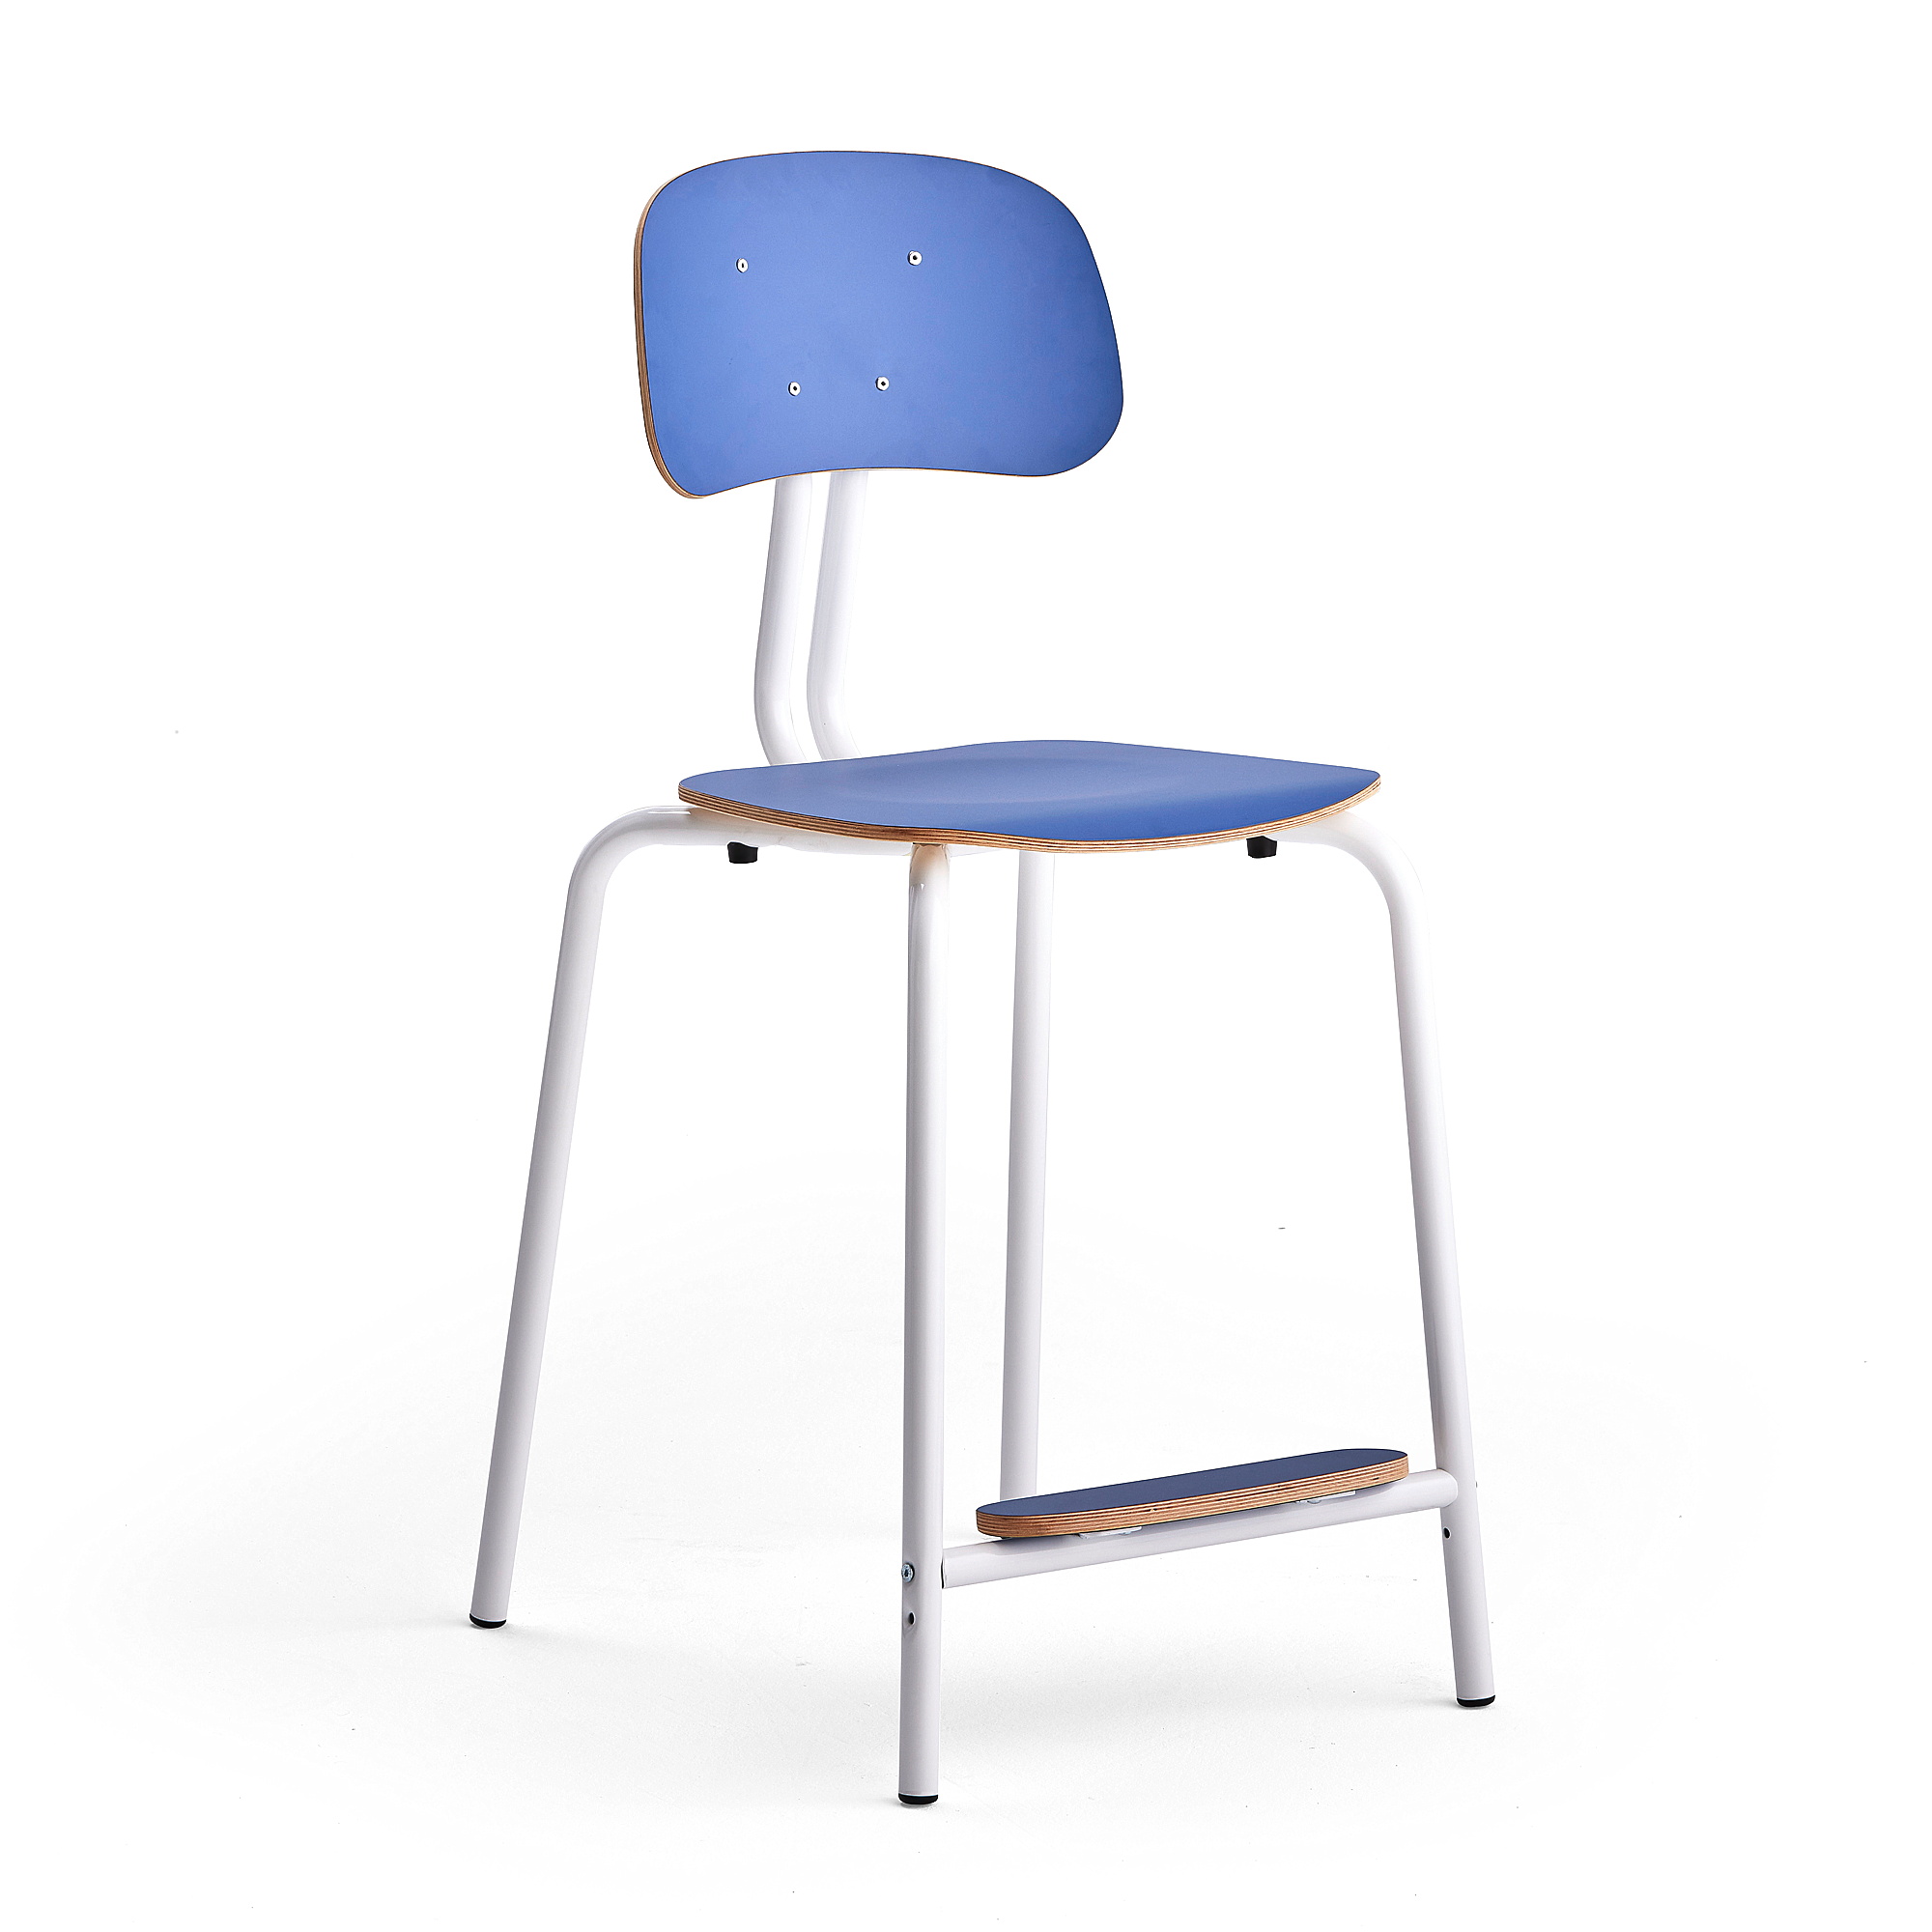 Školní židle YNGVE, 4 nohy, výška 610 mm, bílá/modrá